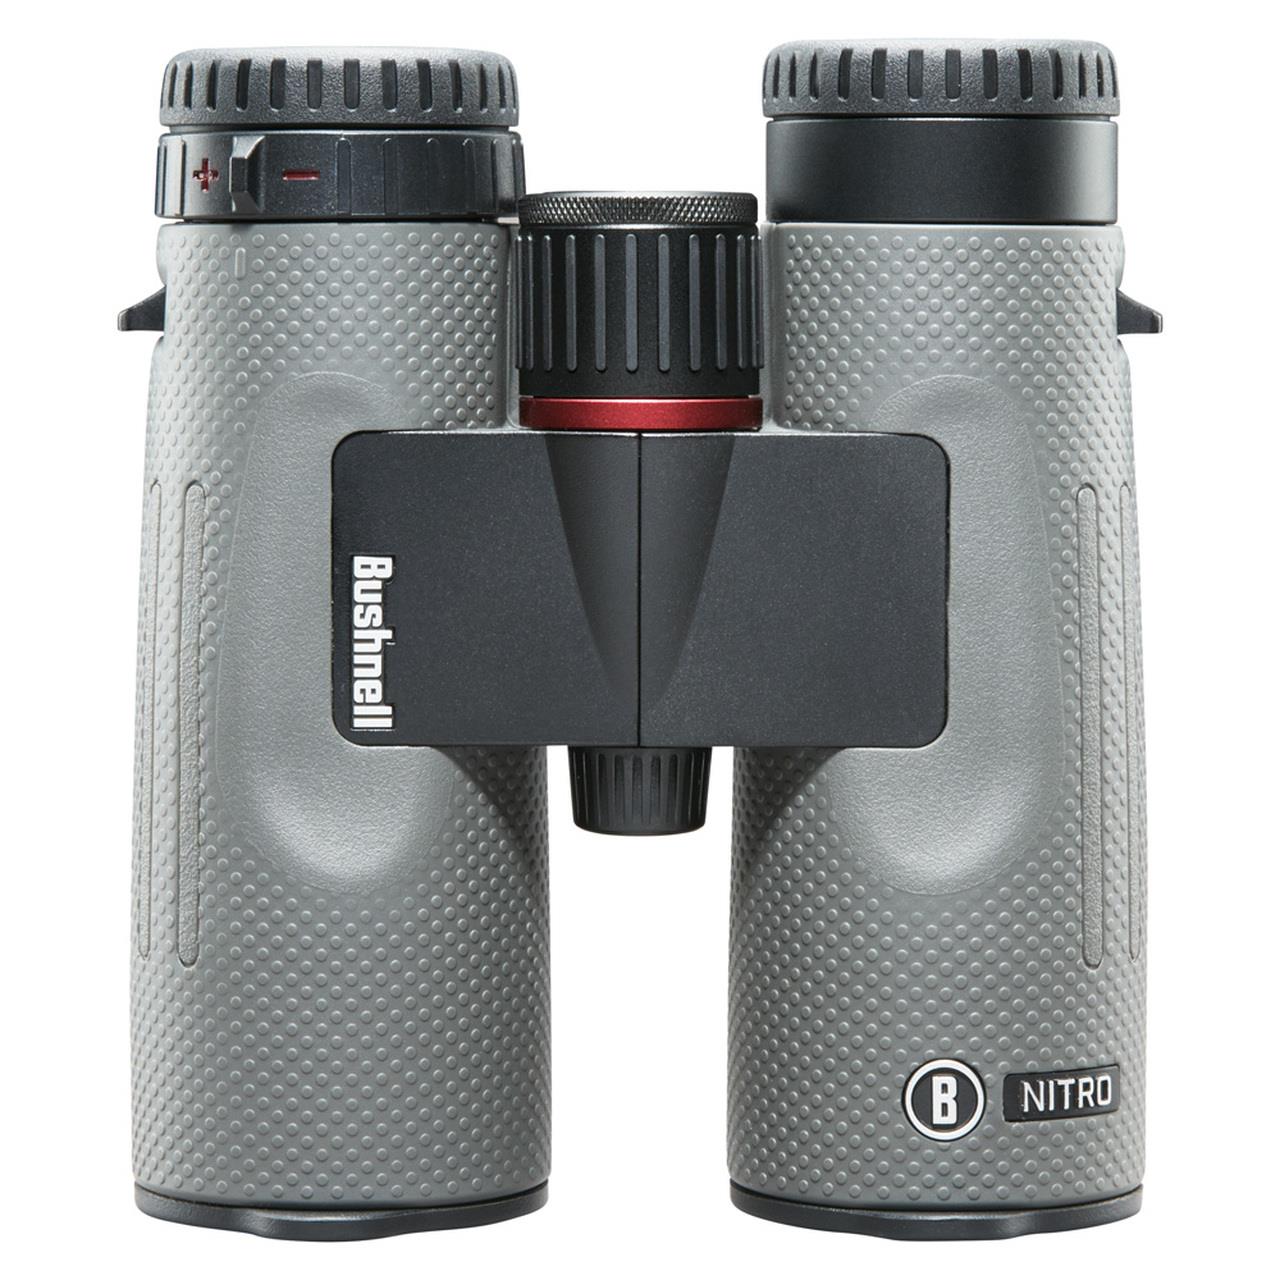 Bushnell Nitro Binoculars 10X42mm